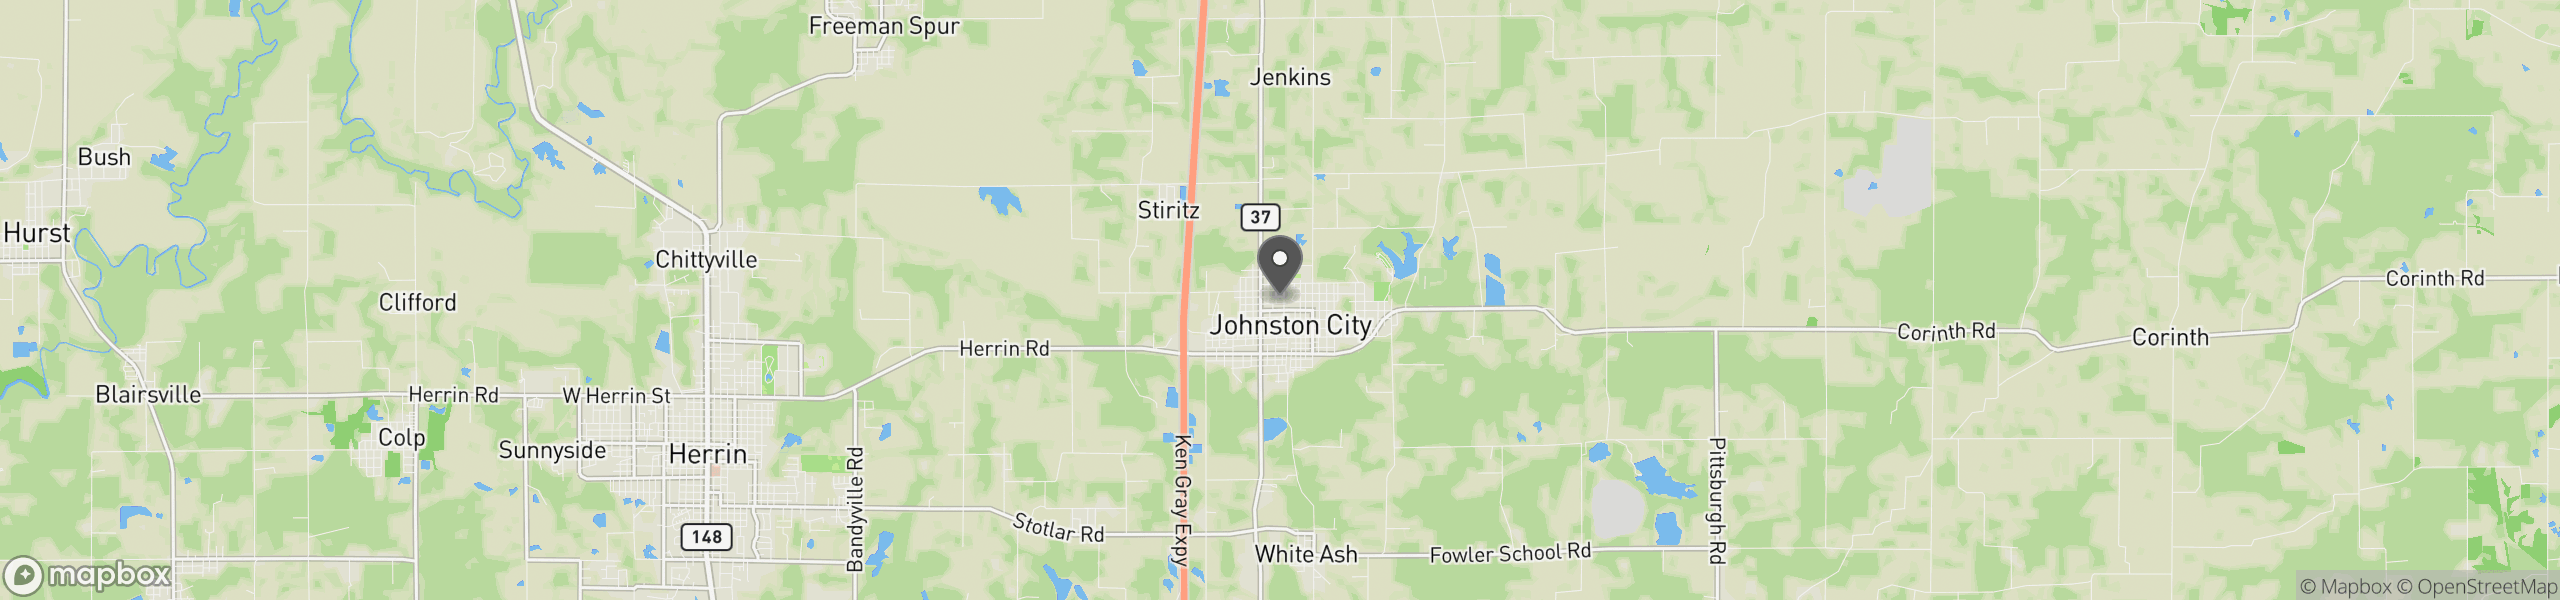 Johnston City, IL